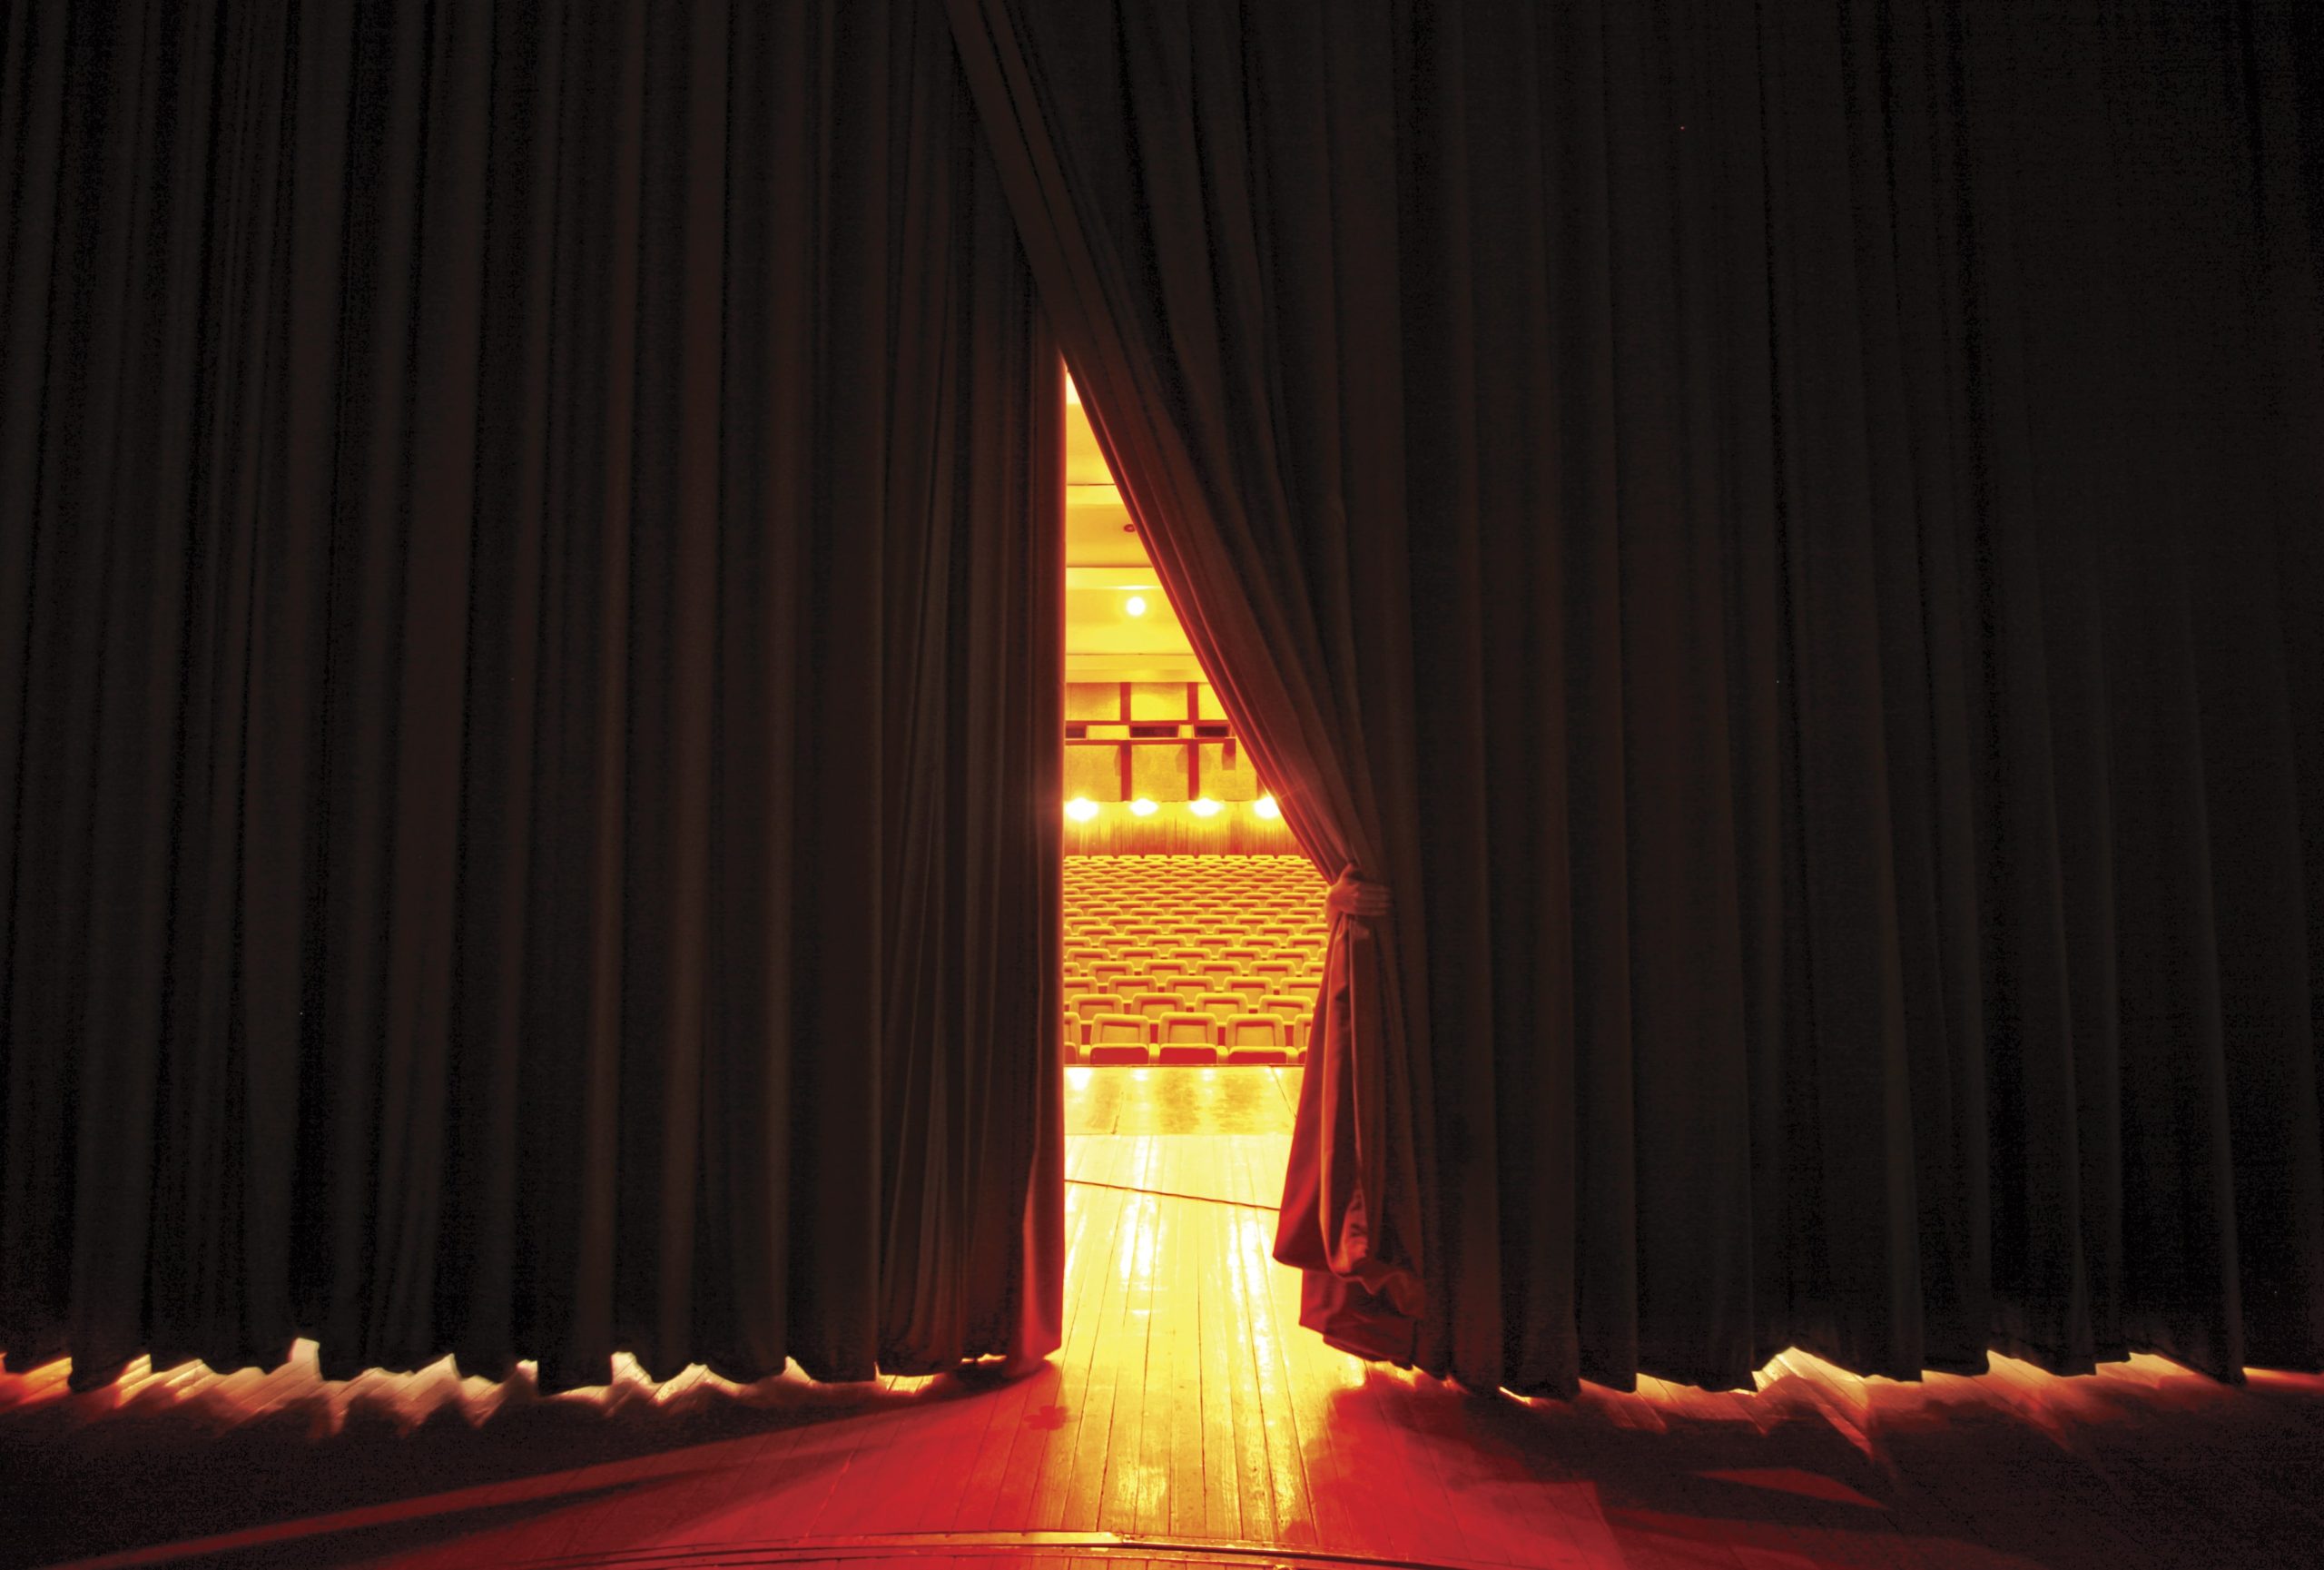 Vista de um palco com as cortinas se abrindo revelando bancos vazios em uma platéia.